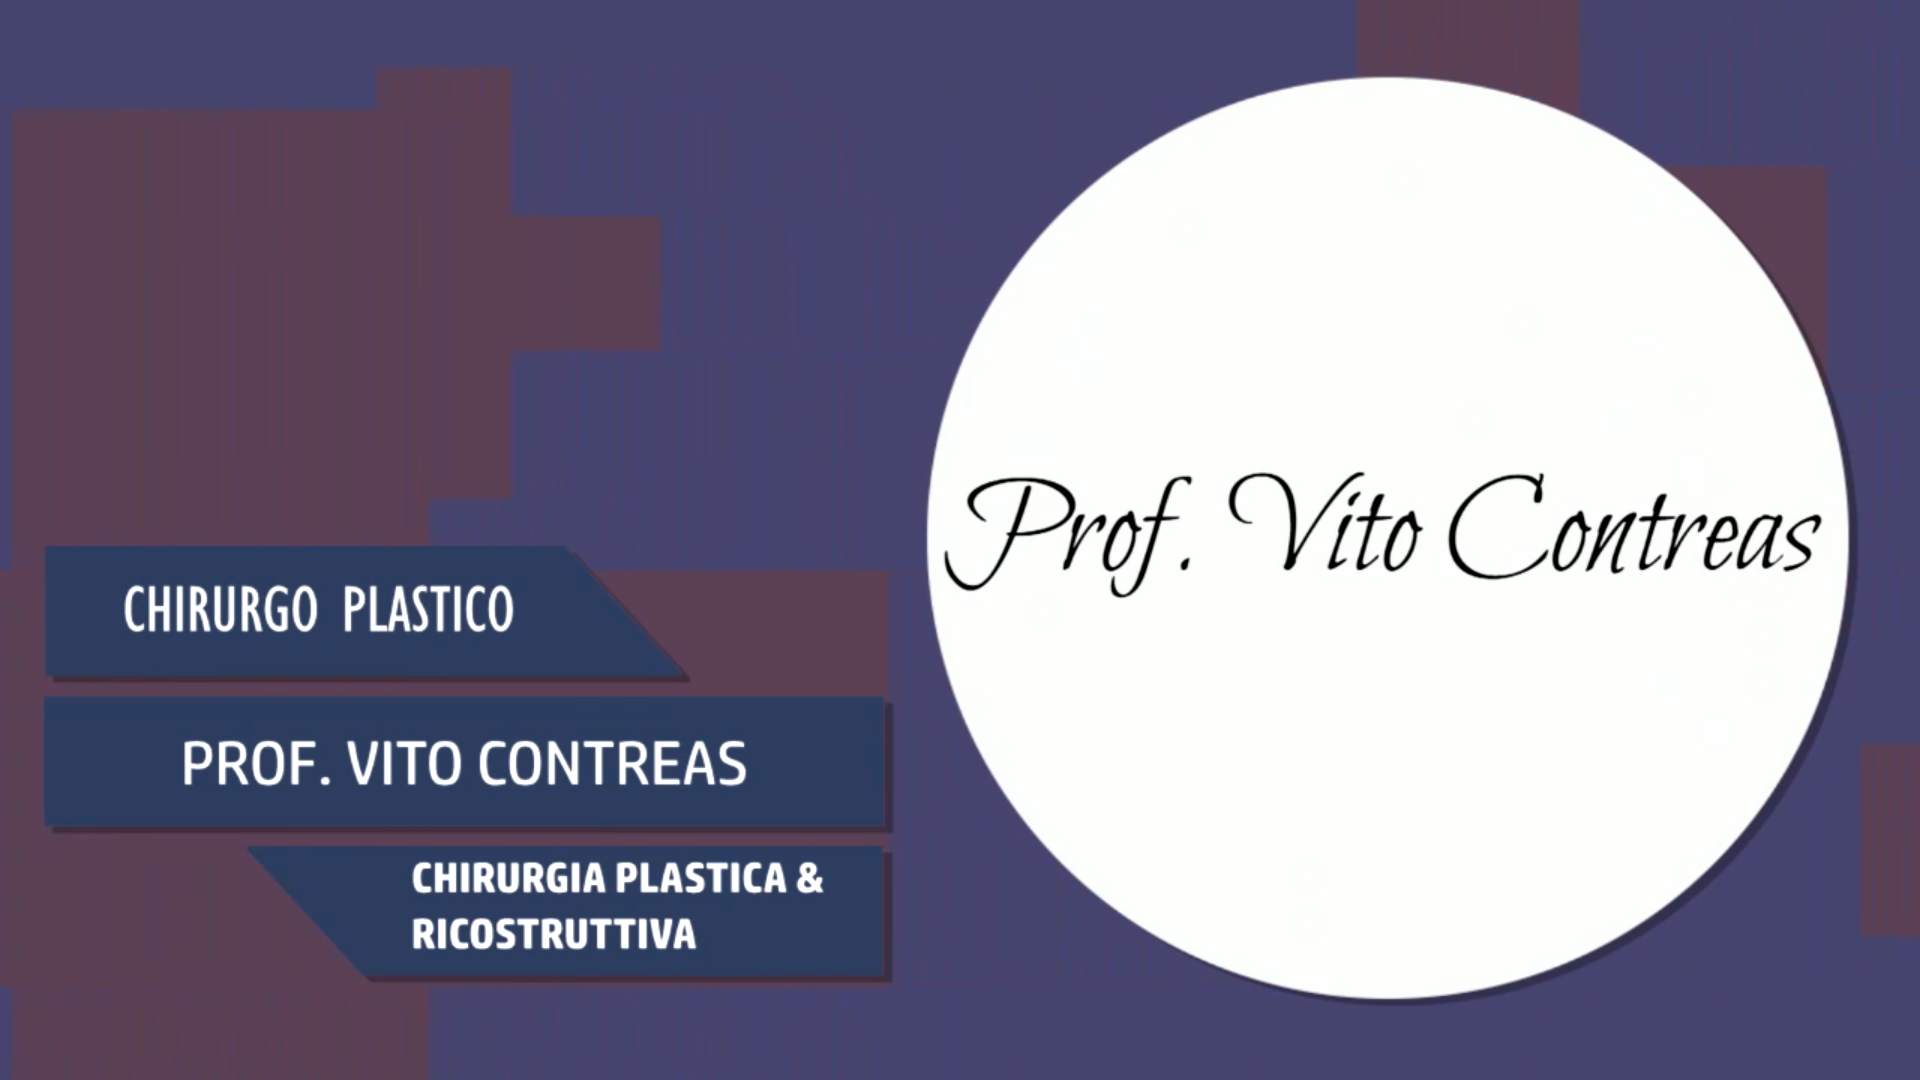 Intervista al Prof. Vito Contreas – Chirurgia plastica & ricostruttiva